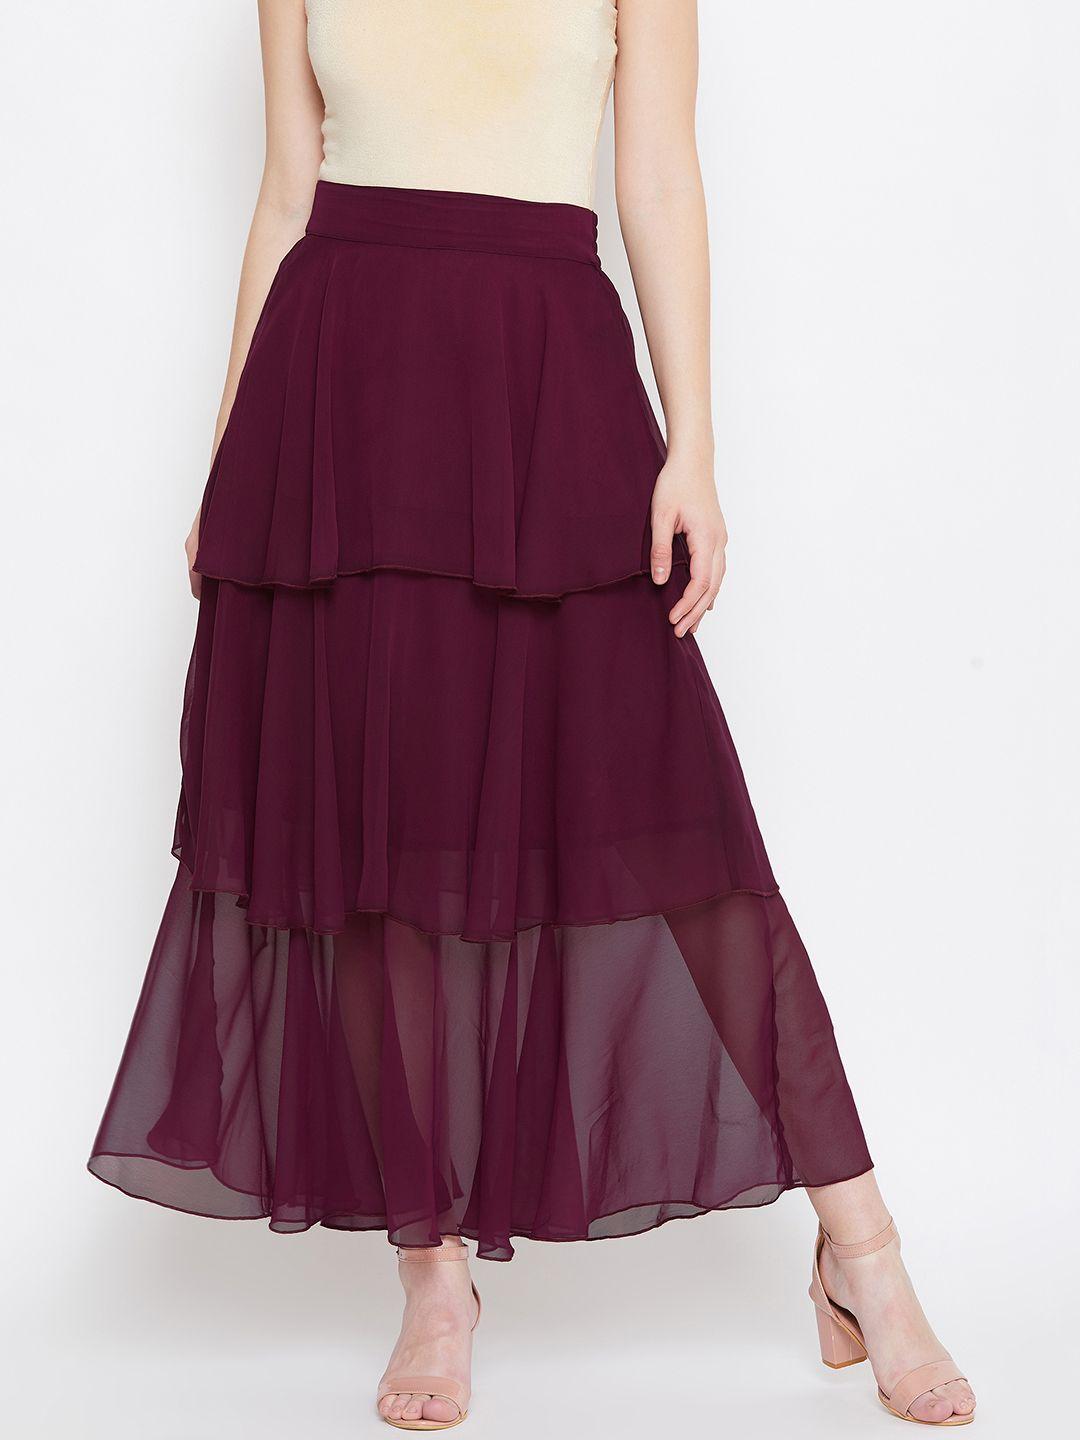 bitterlime women burgundy solid midi a-line skirt